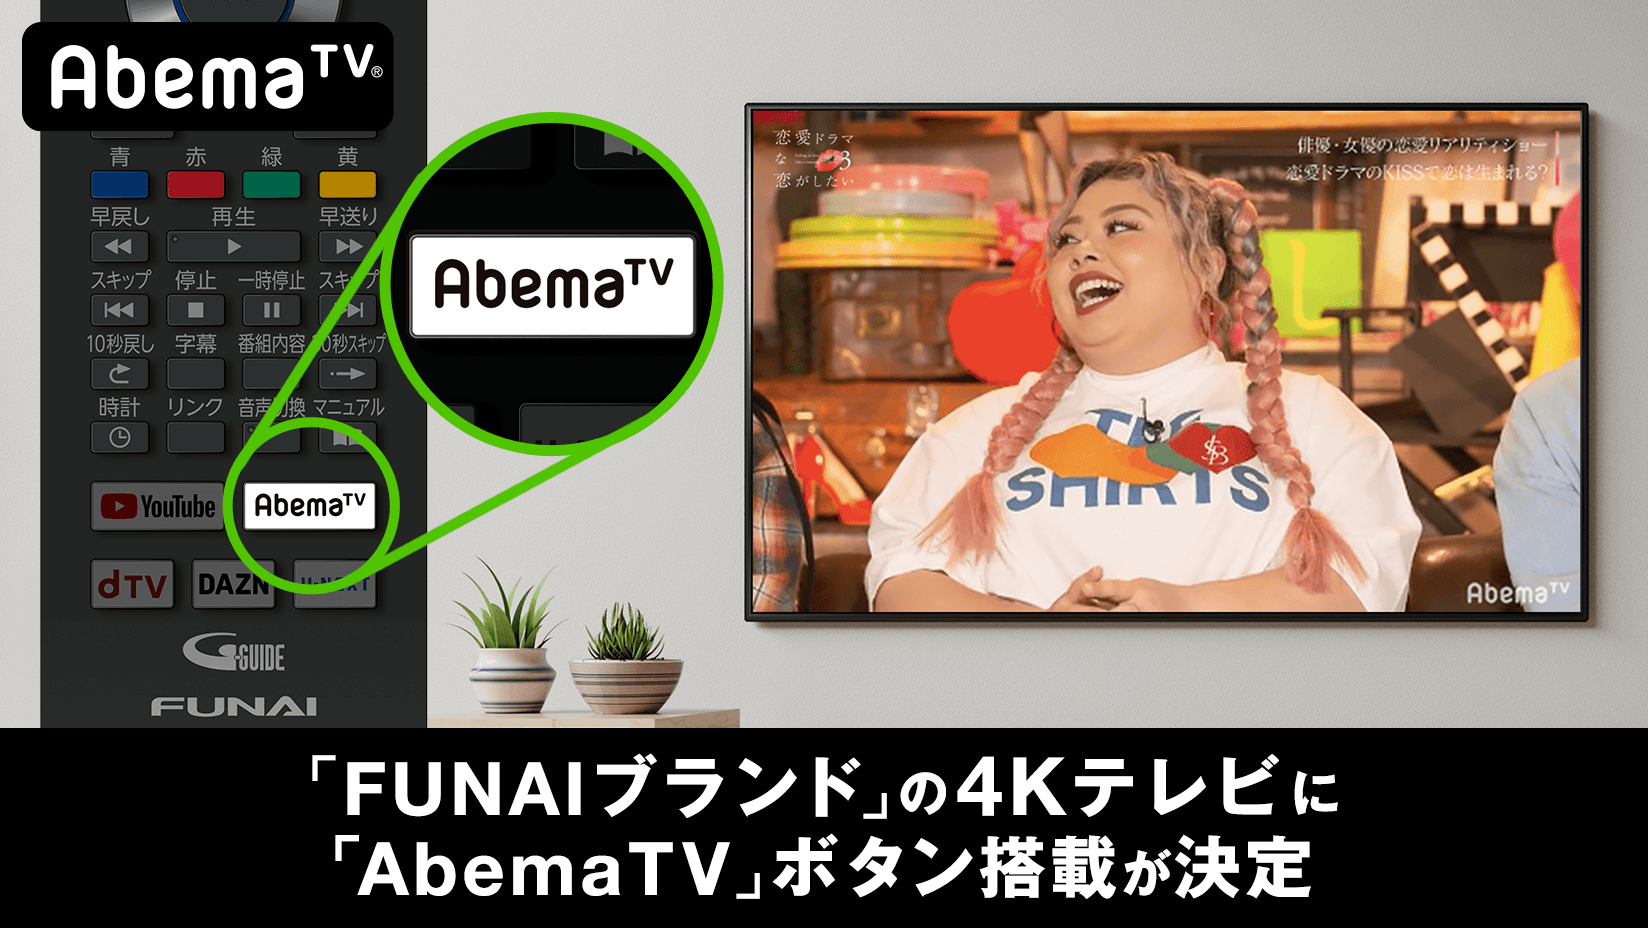 インターネットテレビ局 Abematv が Funaiブランド の４kテレビに対応 株式会社abematv